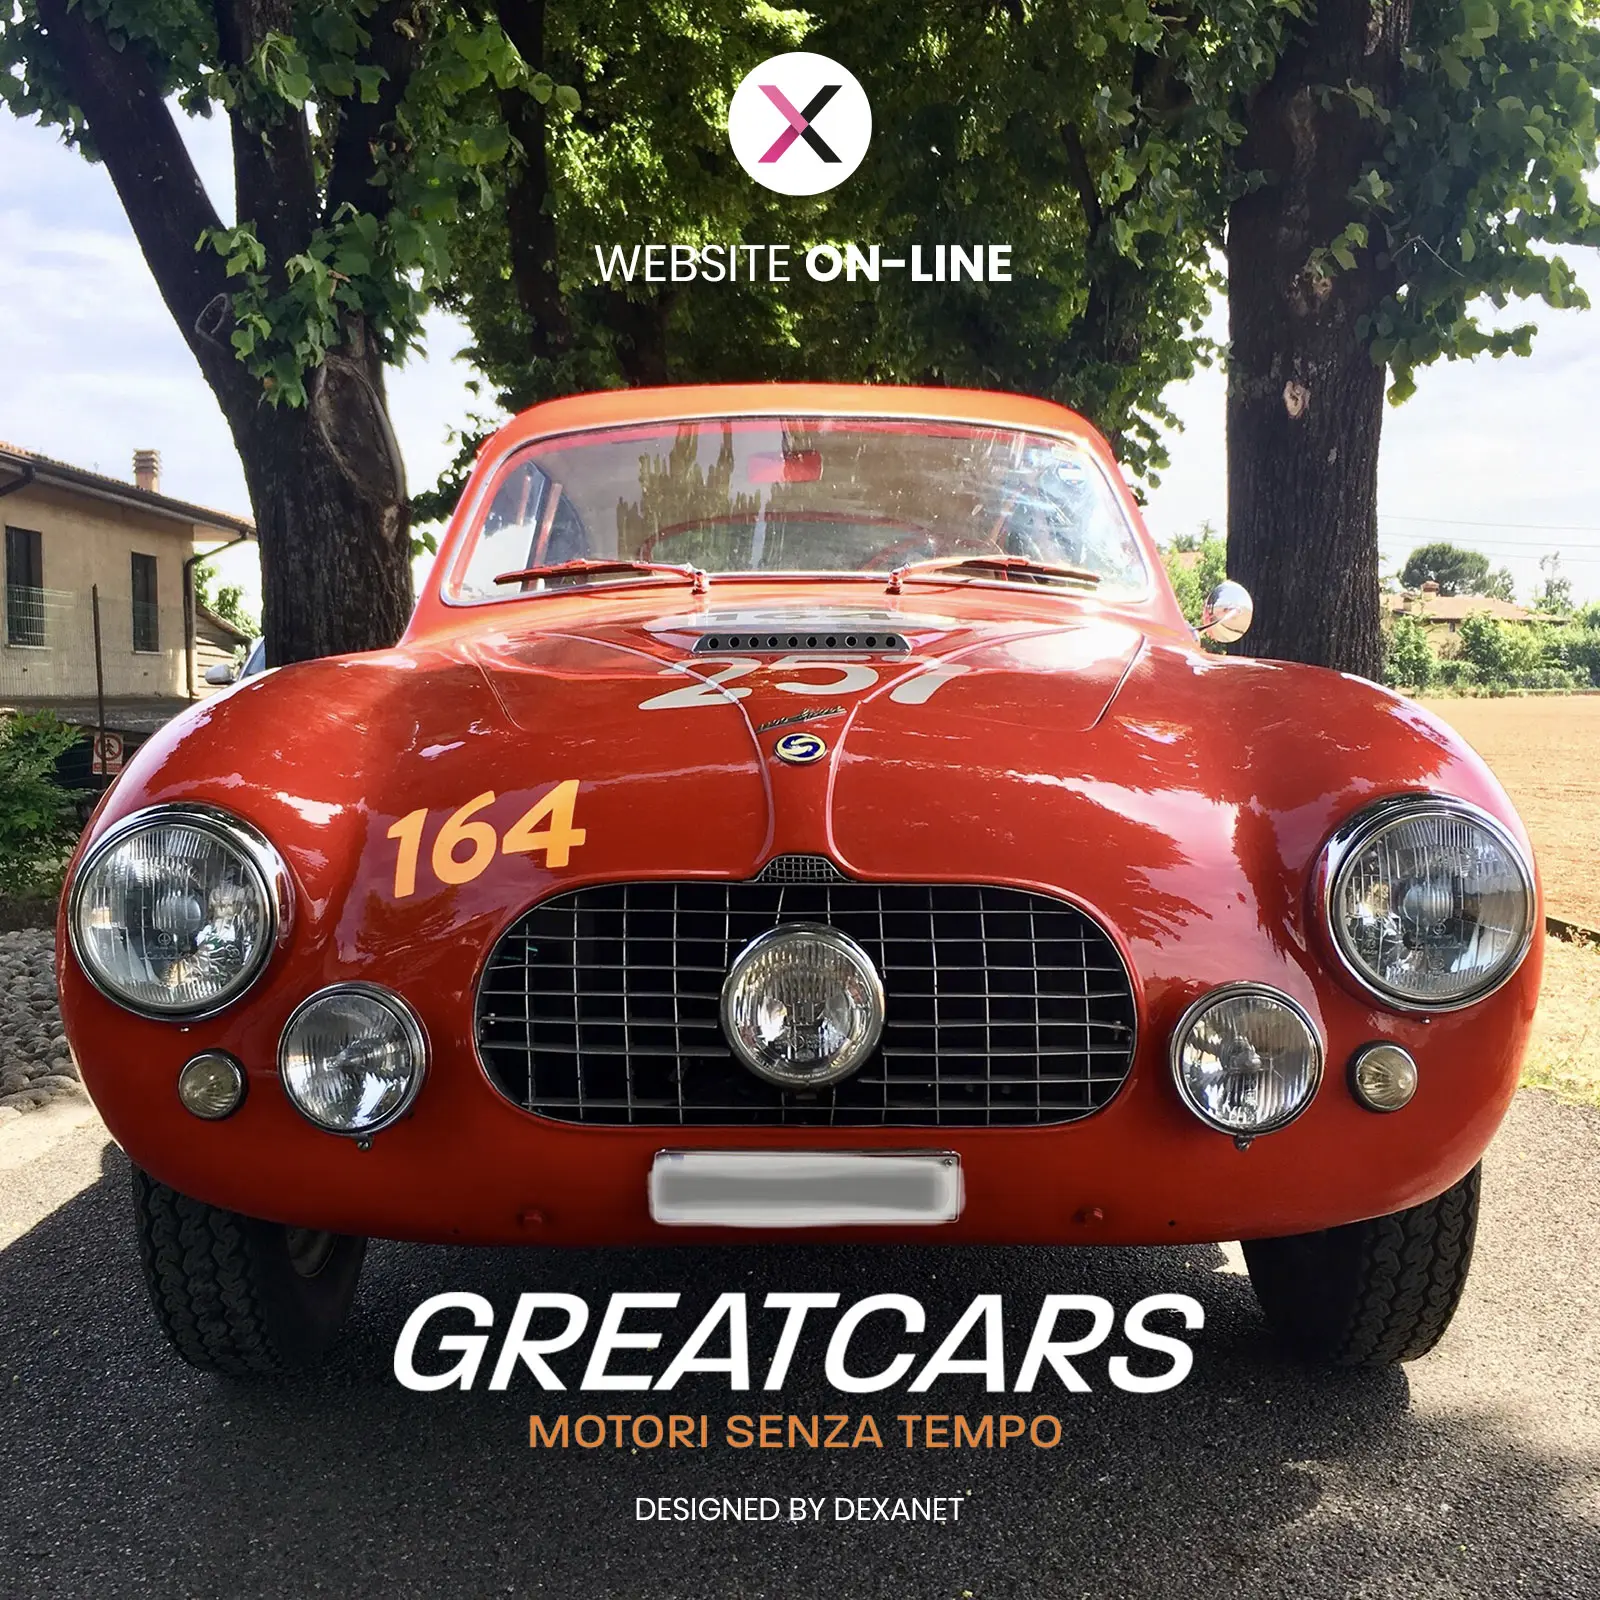 Una piattaforma a quattro ruote (classiche): la realizzazione di un sito one page professionale per Greatcars.